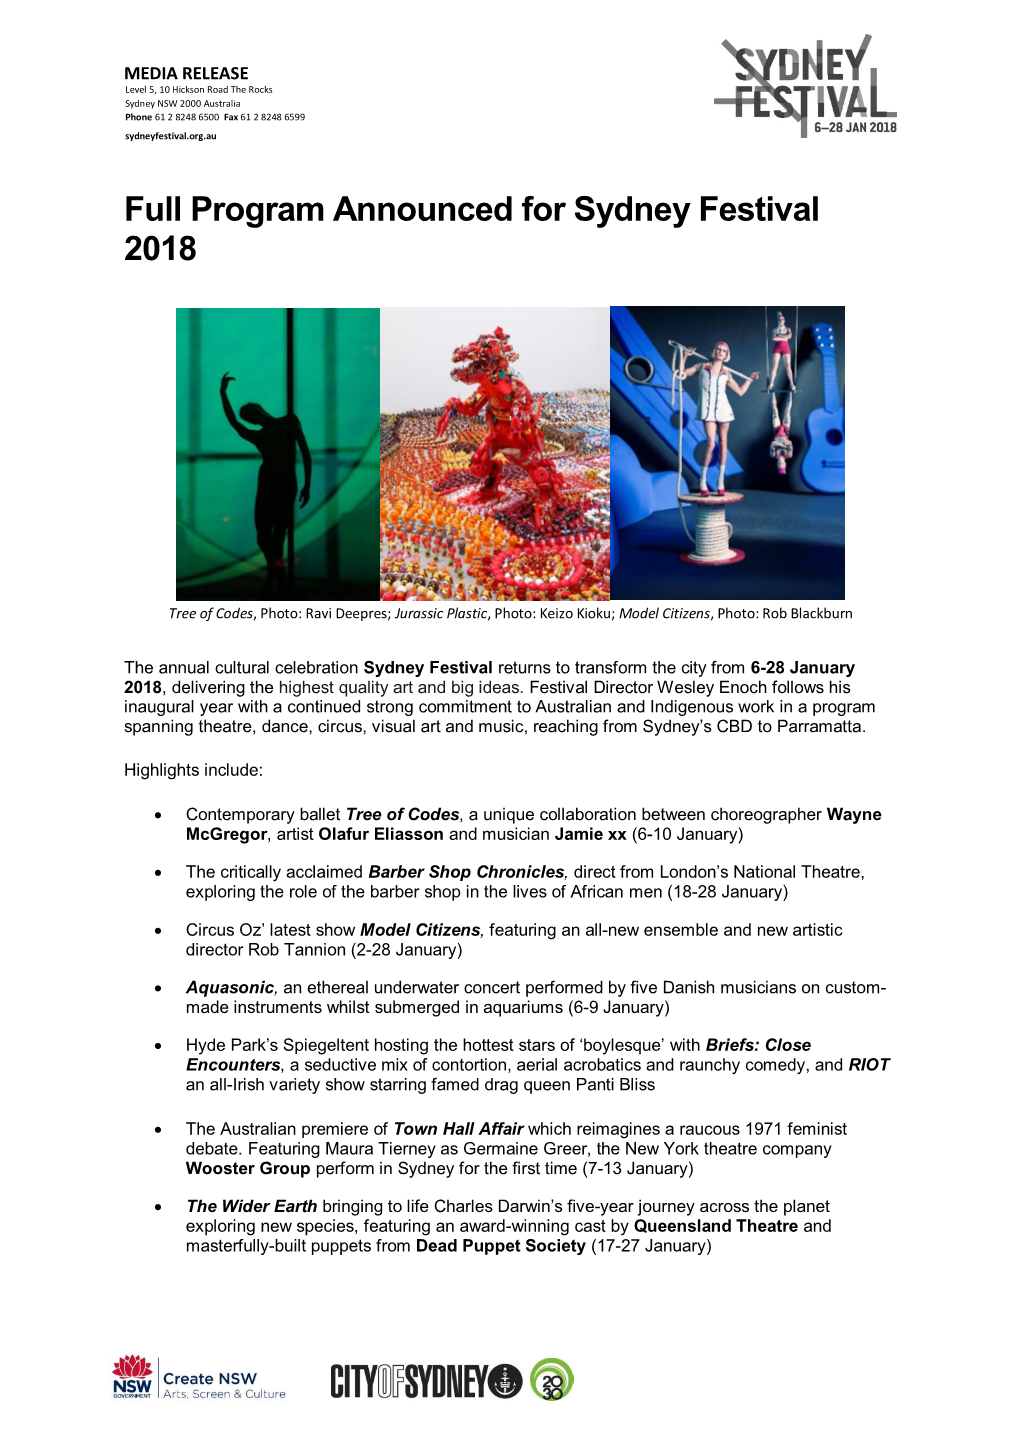 Full Program Announced for Sydney Festival 2018